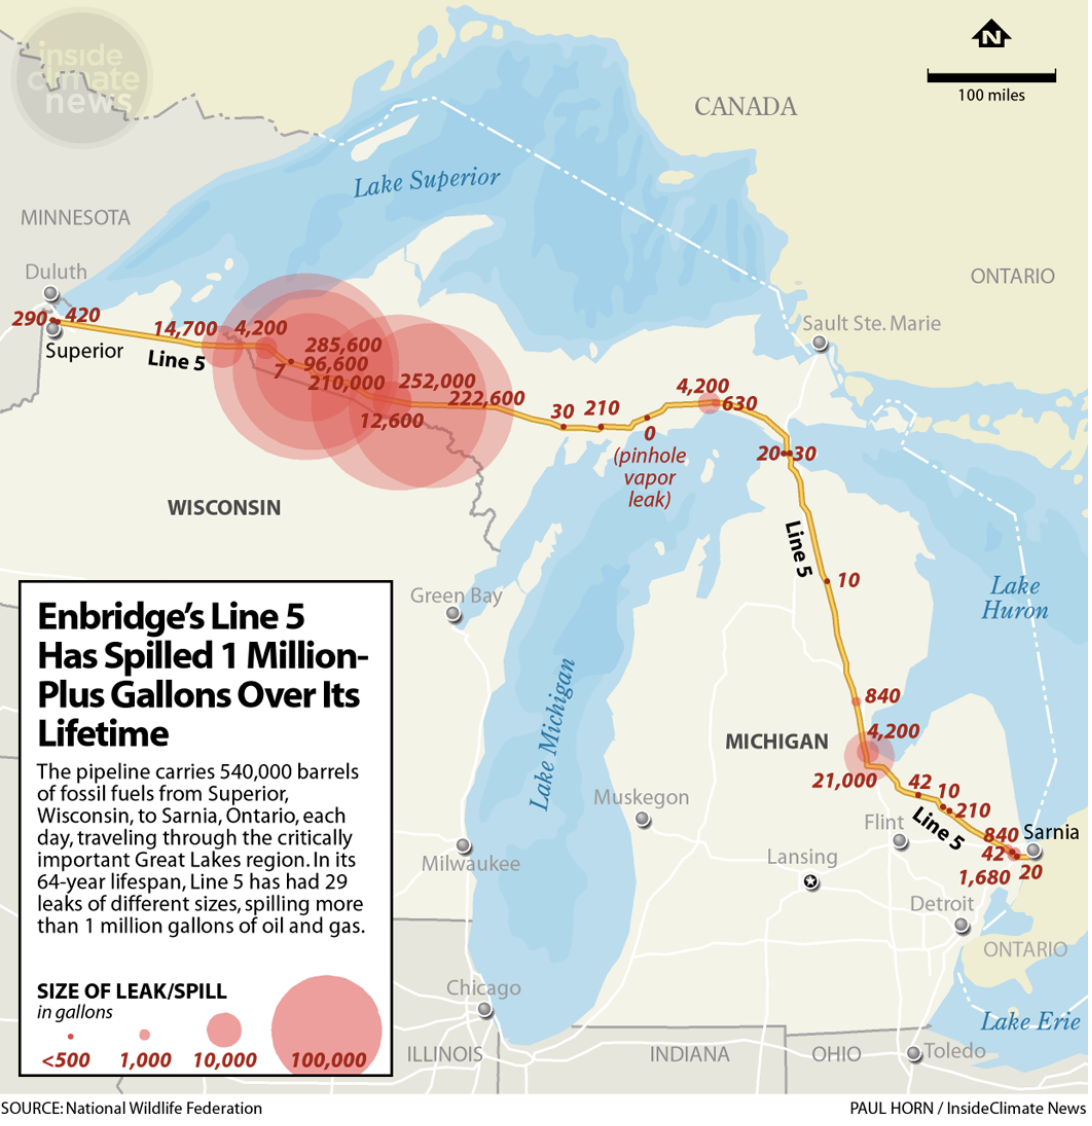 Enbridge's Line 5 has spilled 1 million plus gallons over its lifetime